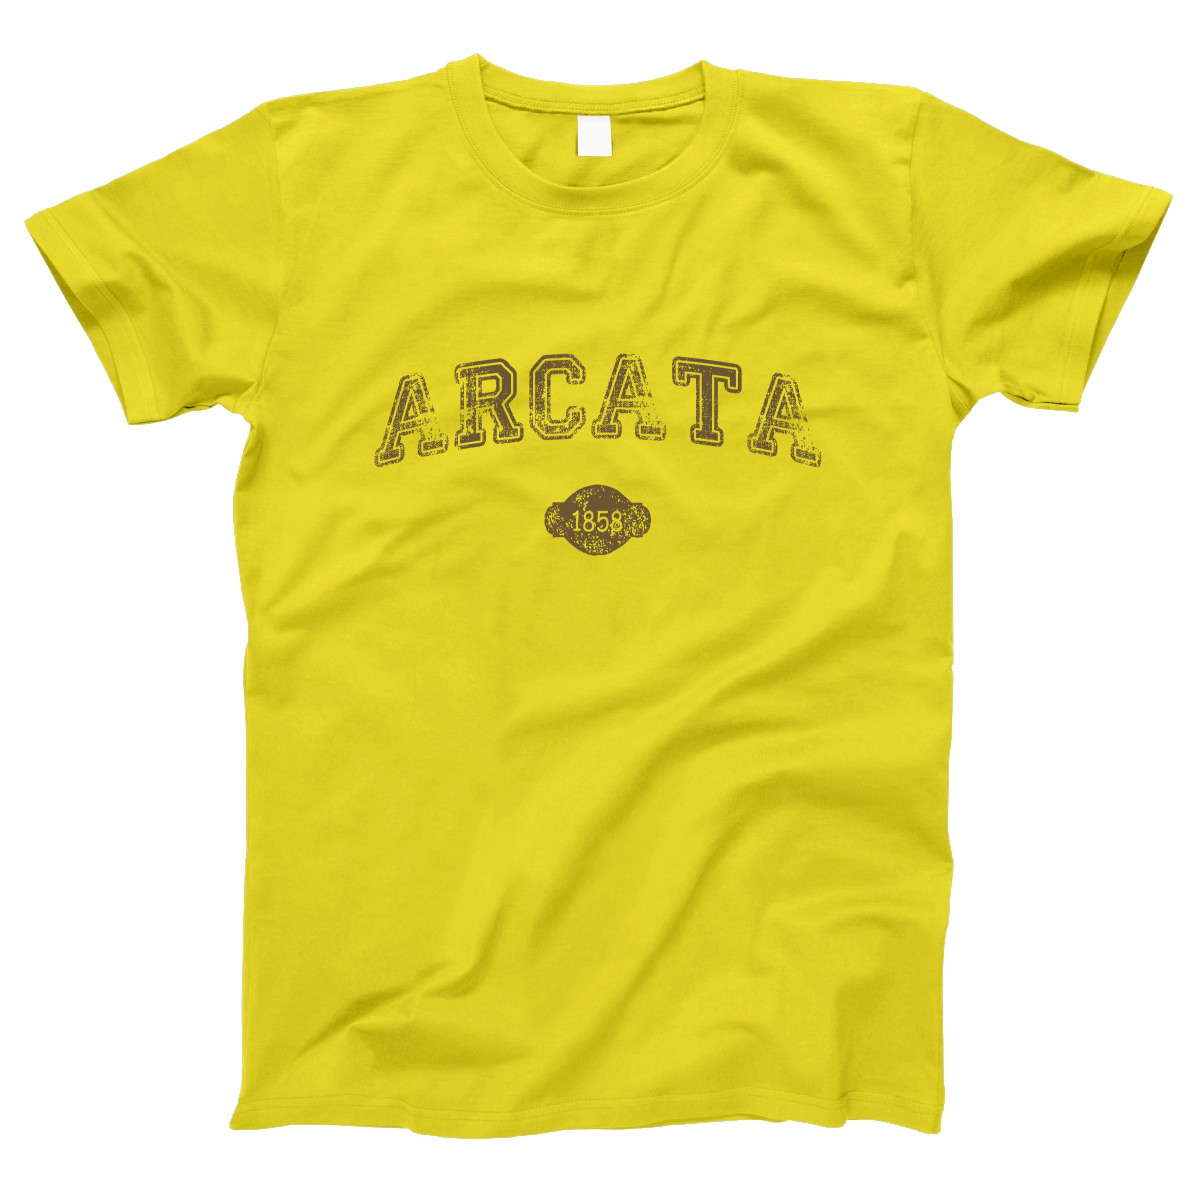 Arcata 1858 Represent Women's T-shirt | Yellow